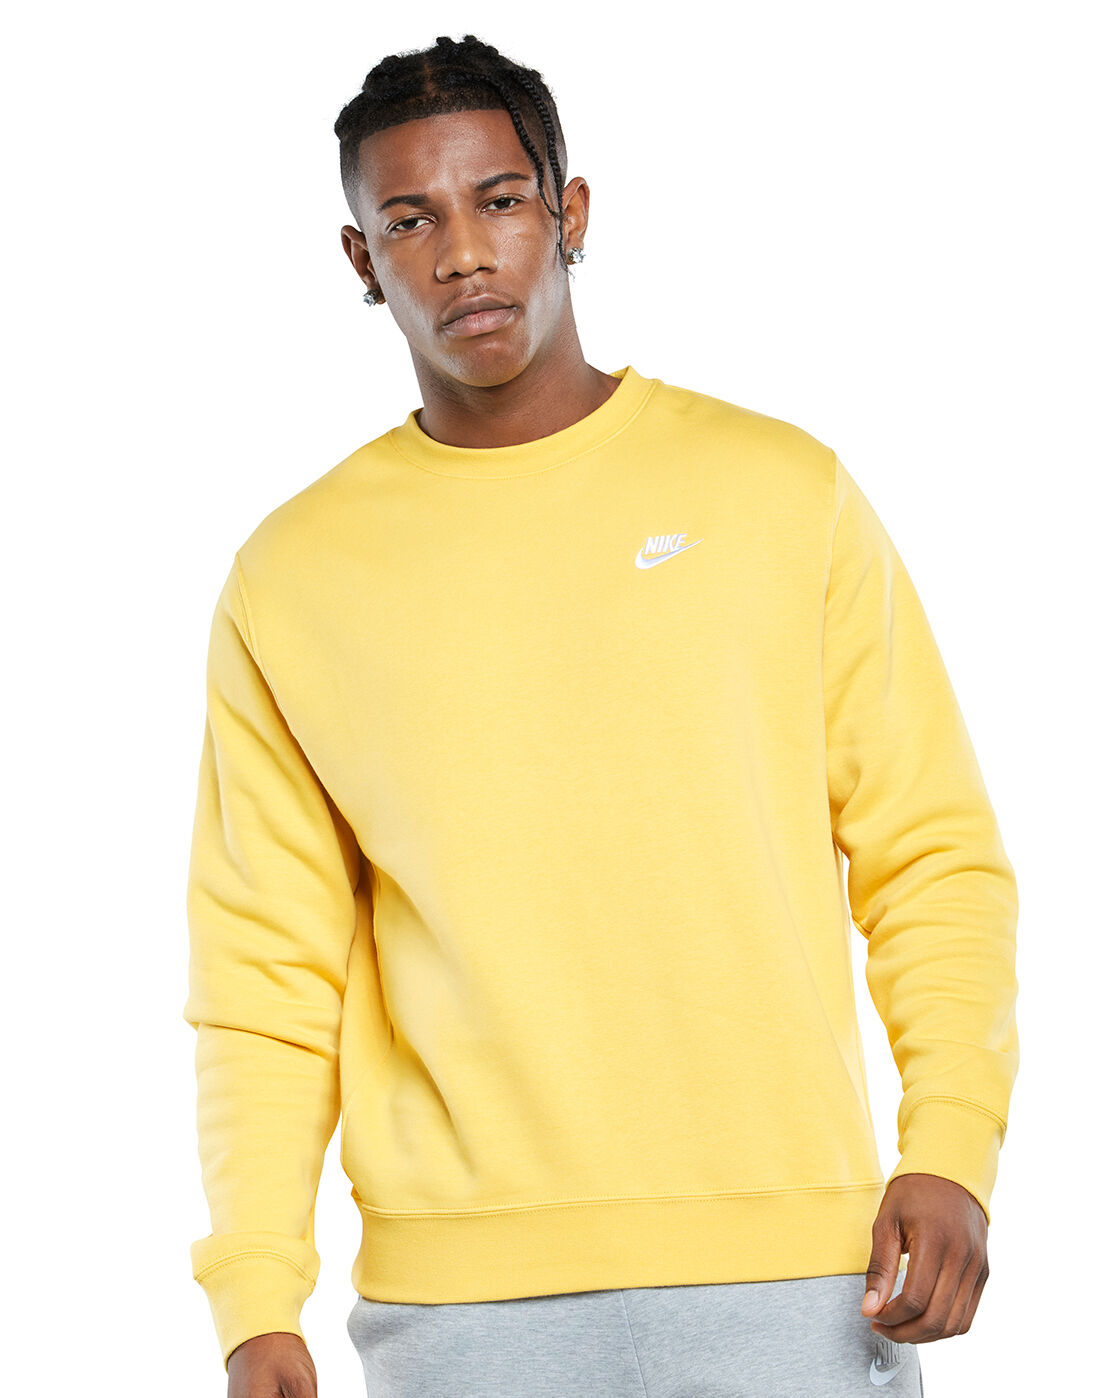 yellow nike crewneck sweatshirt